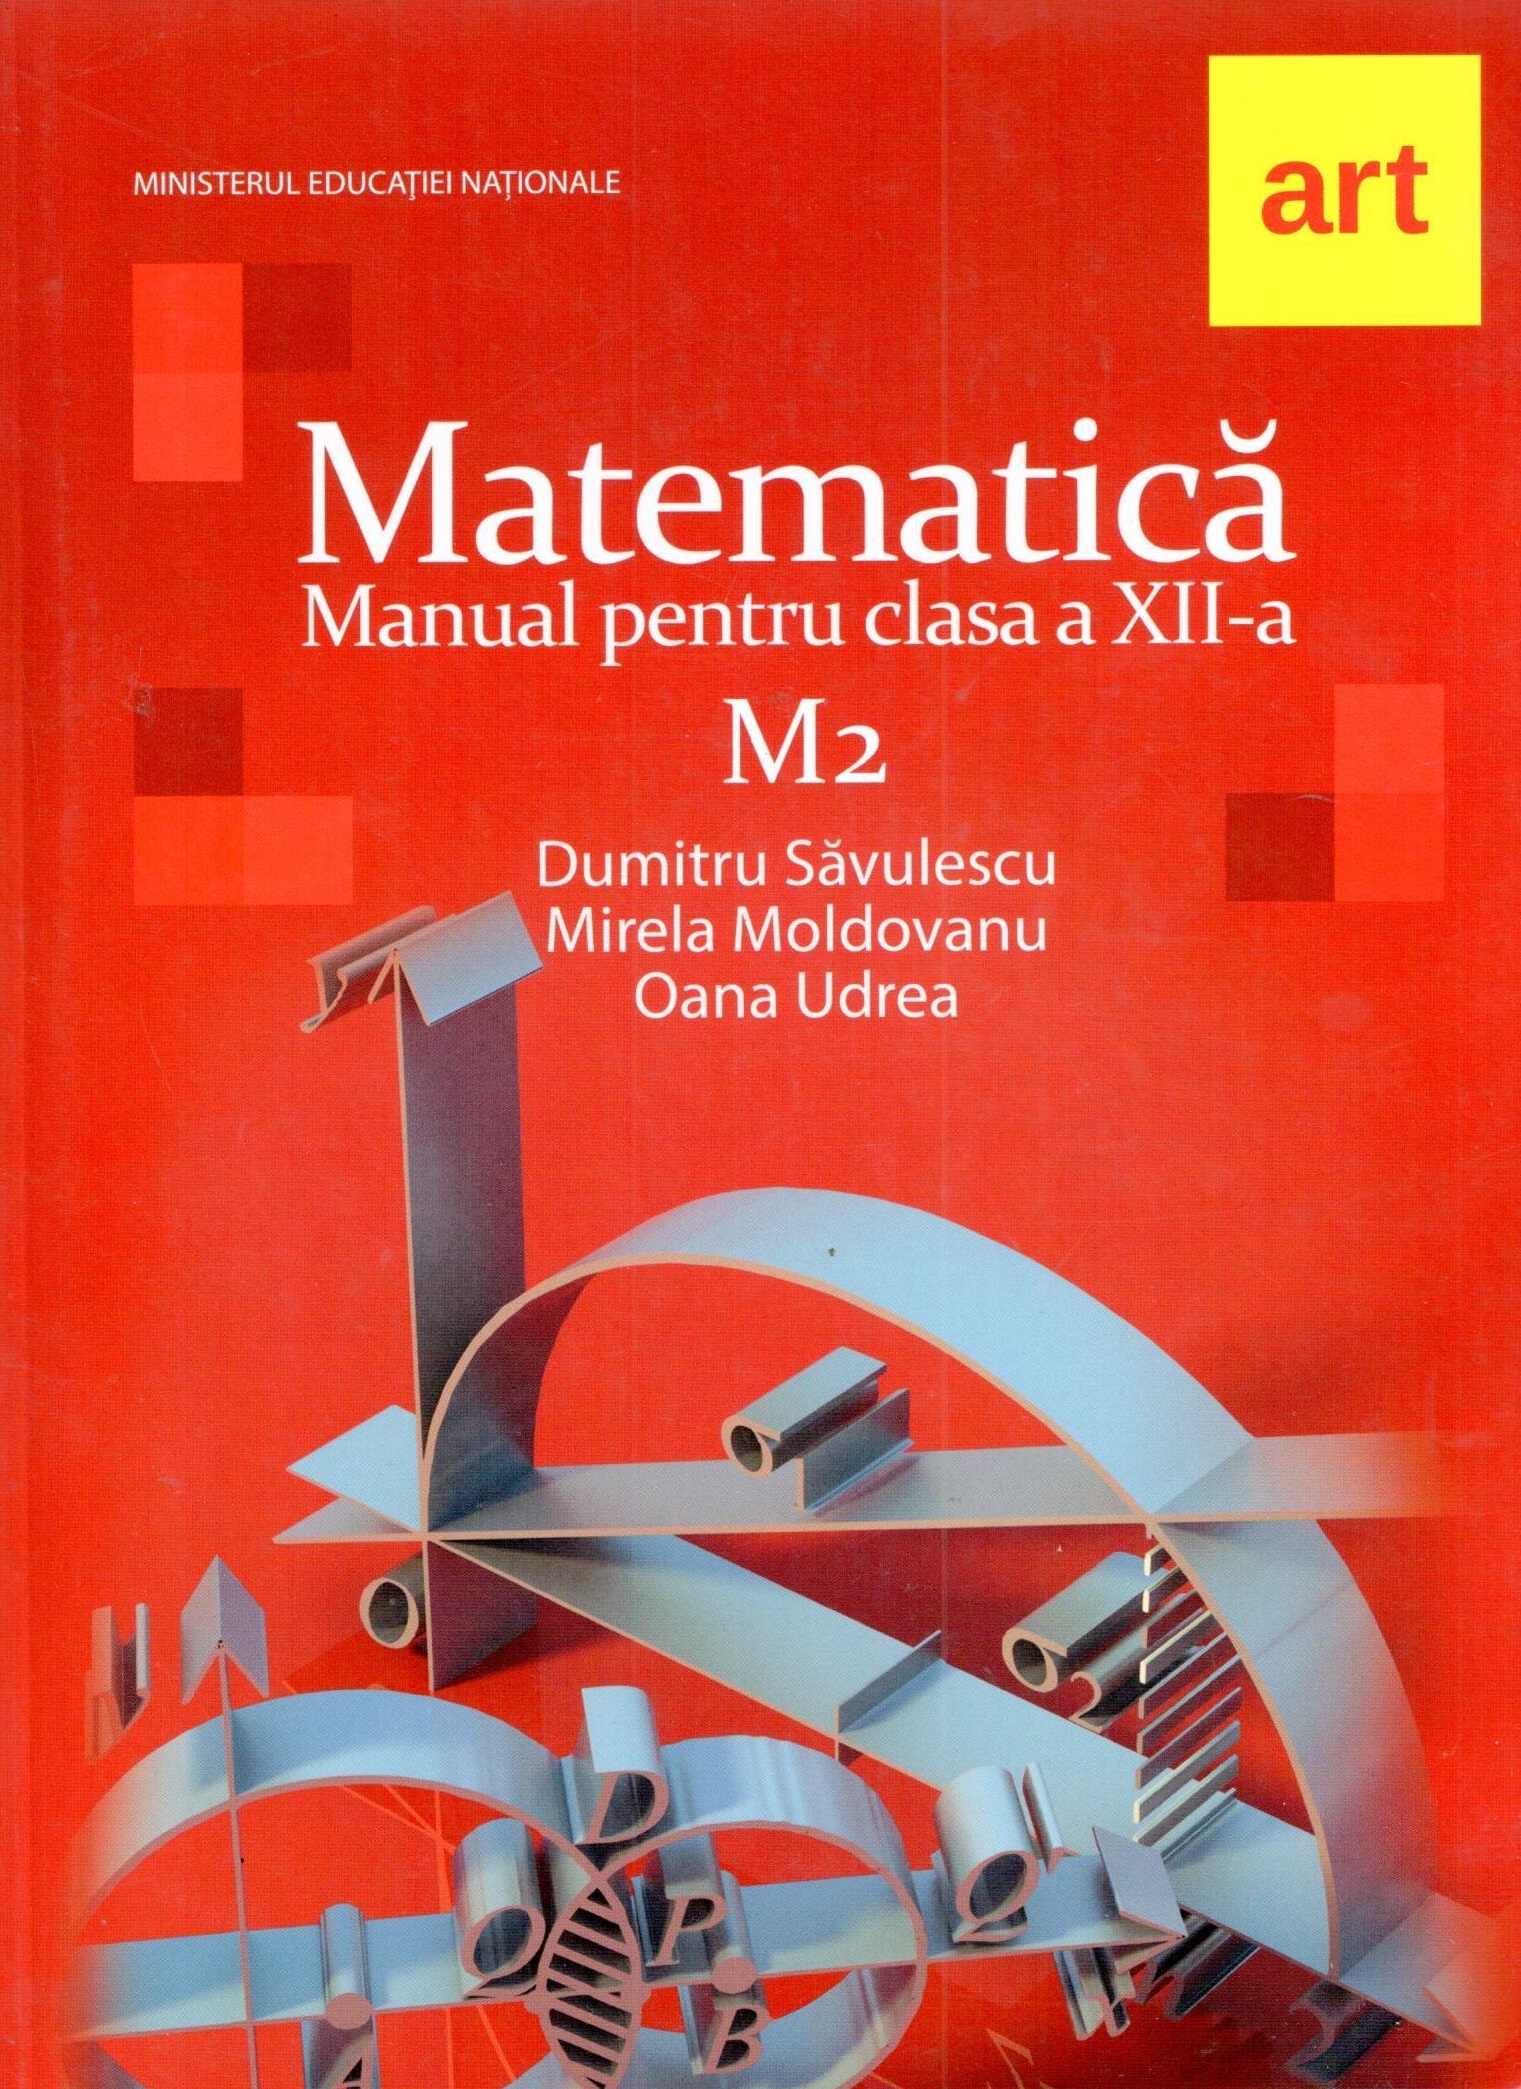 Manual matematica M2 pentru clasa a XII-a | Mirela Moldovan, Dumitru Savulescu ART educational imagine 2022